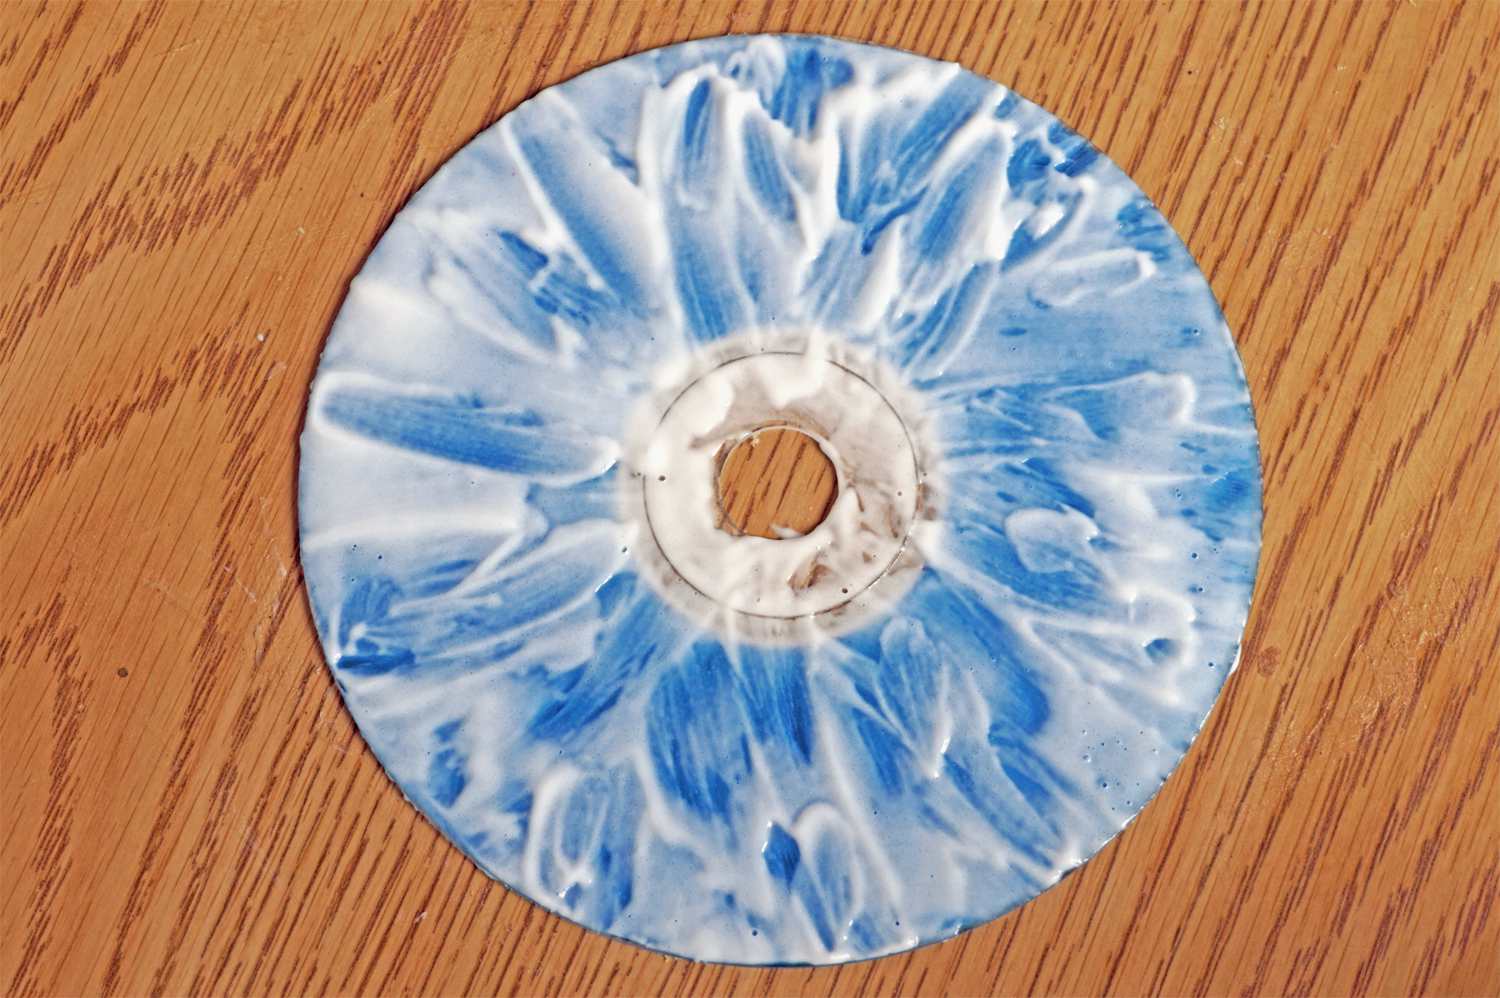 Poškrábané CD pokryté zubní pastou